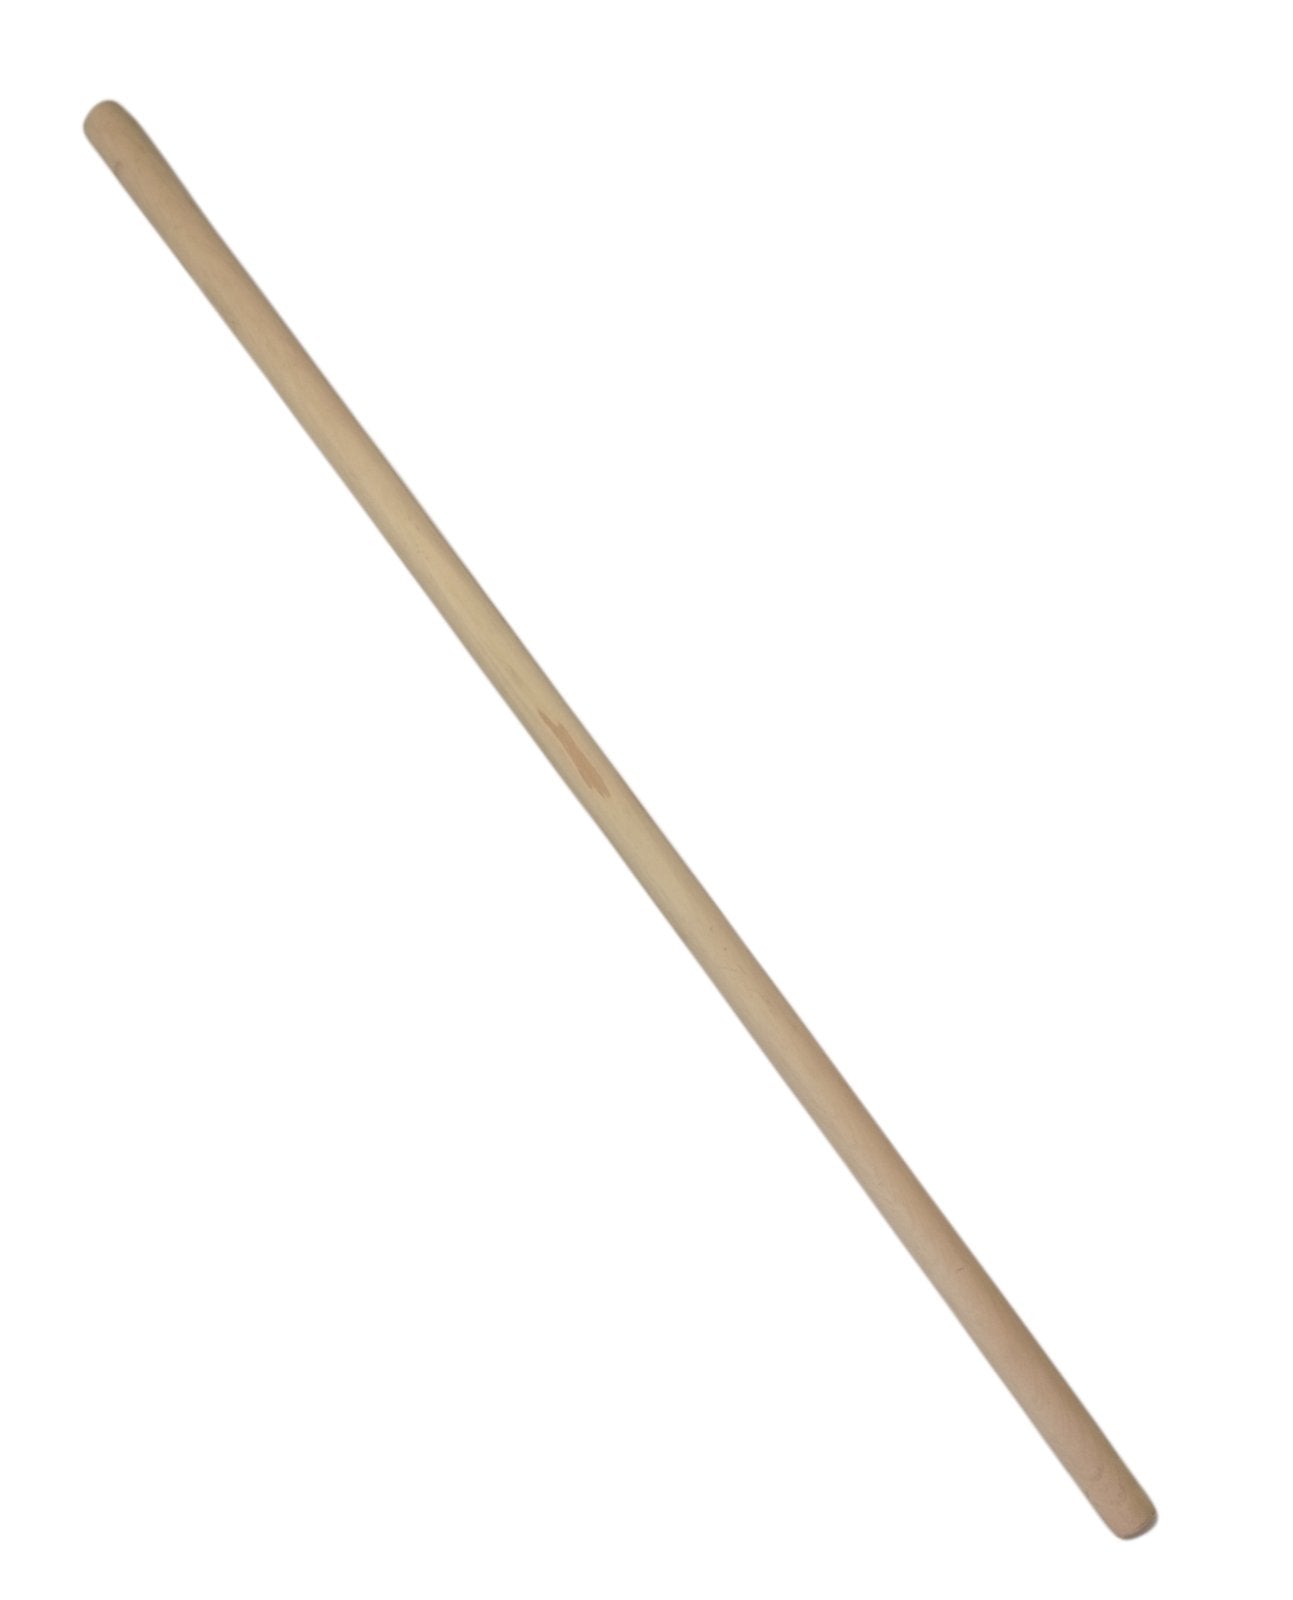 Držalica za lopatu 120cm - ravna